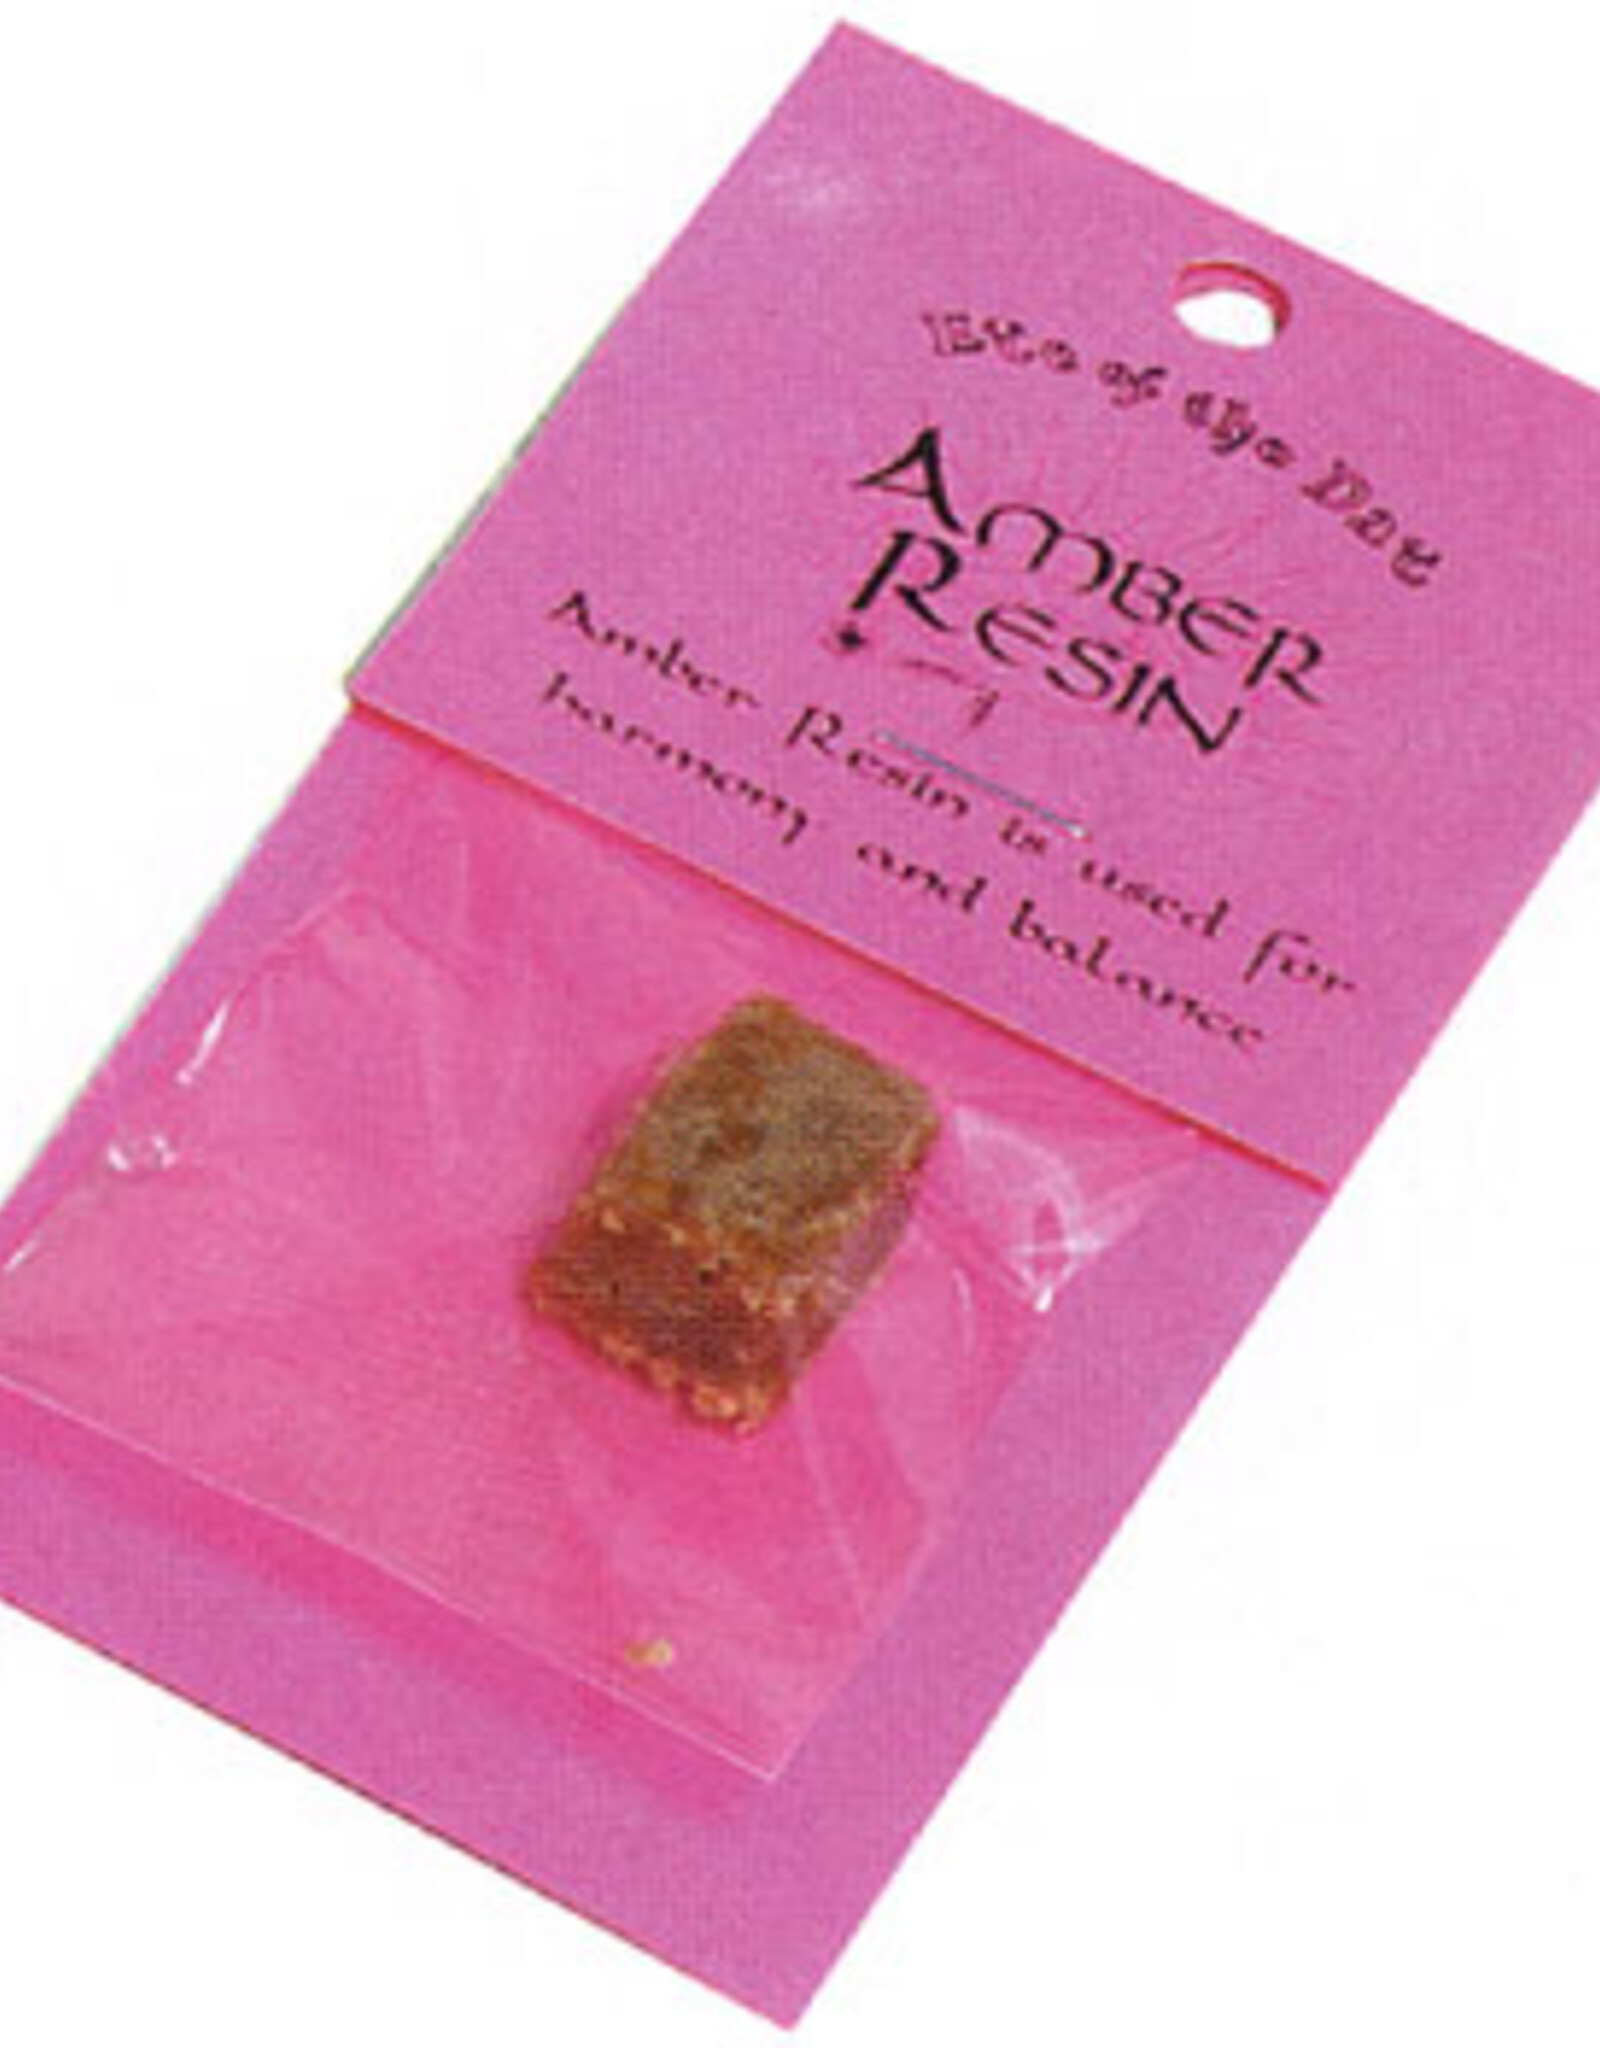 Amber Resin Refill (3 G)